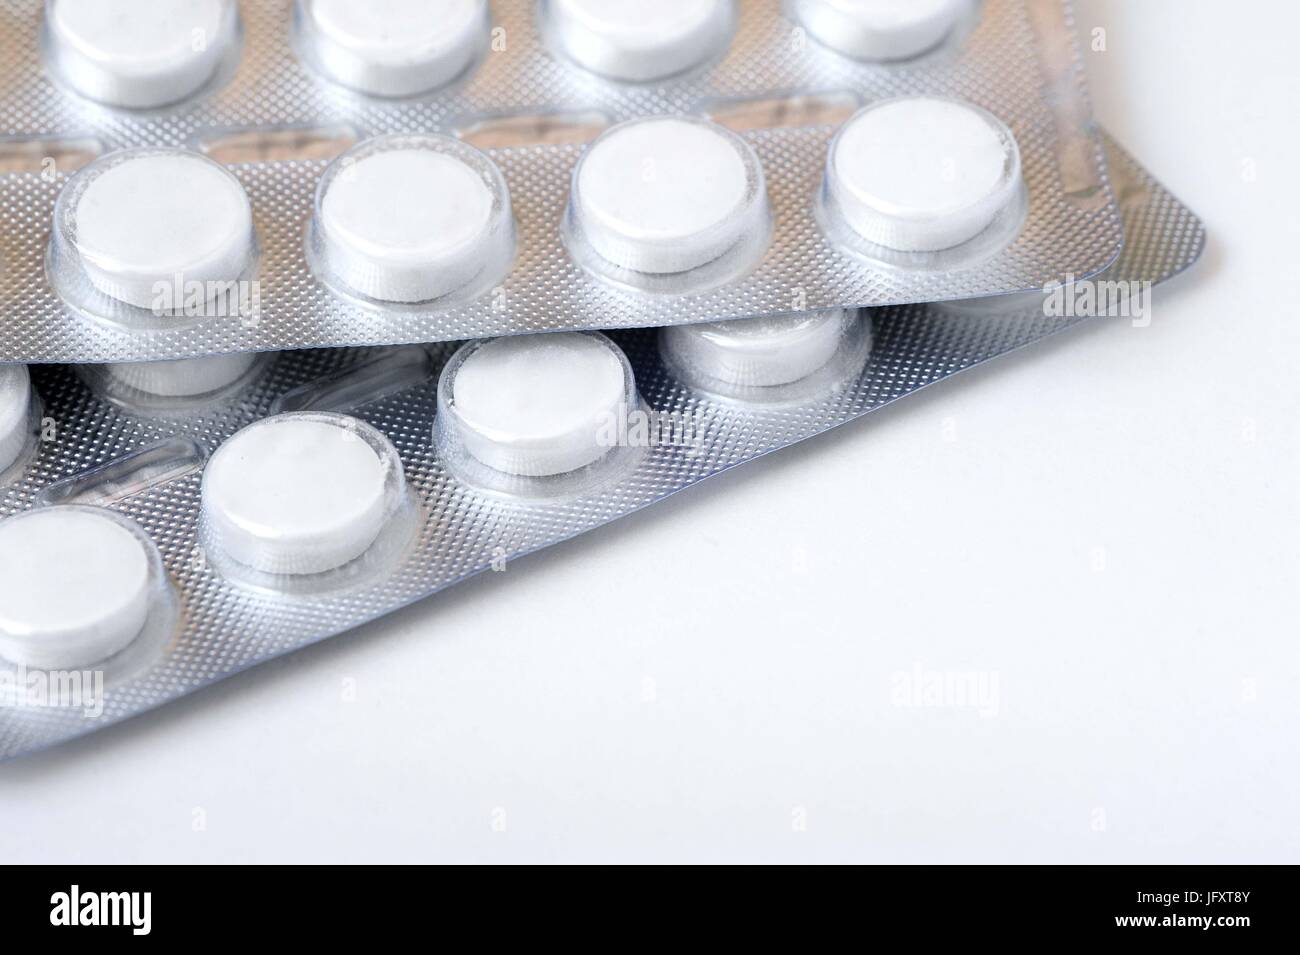 Weiße Tabletten in Aluminium Verpackung auf einem weißen Hintergrund.  Konzept von Gesundheit, Medizin, Pharmakologie Stockfotografie - Alamy